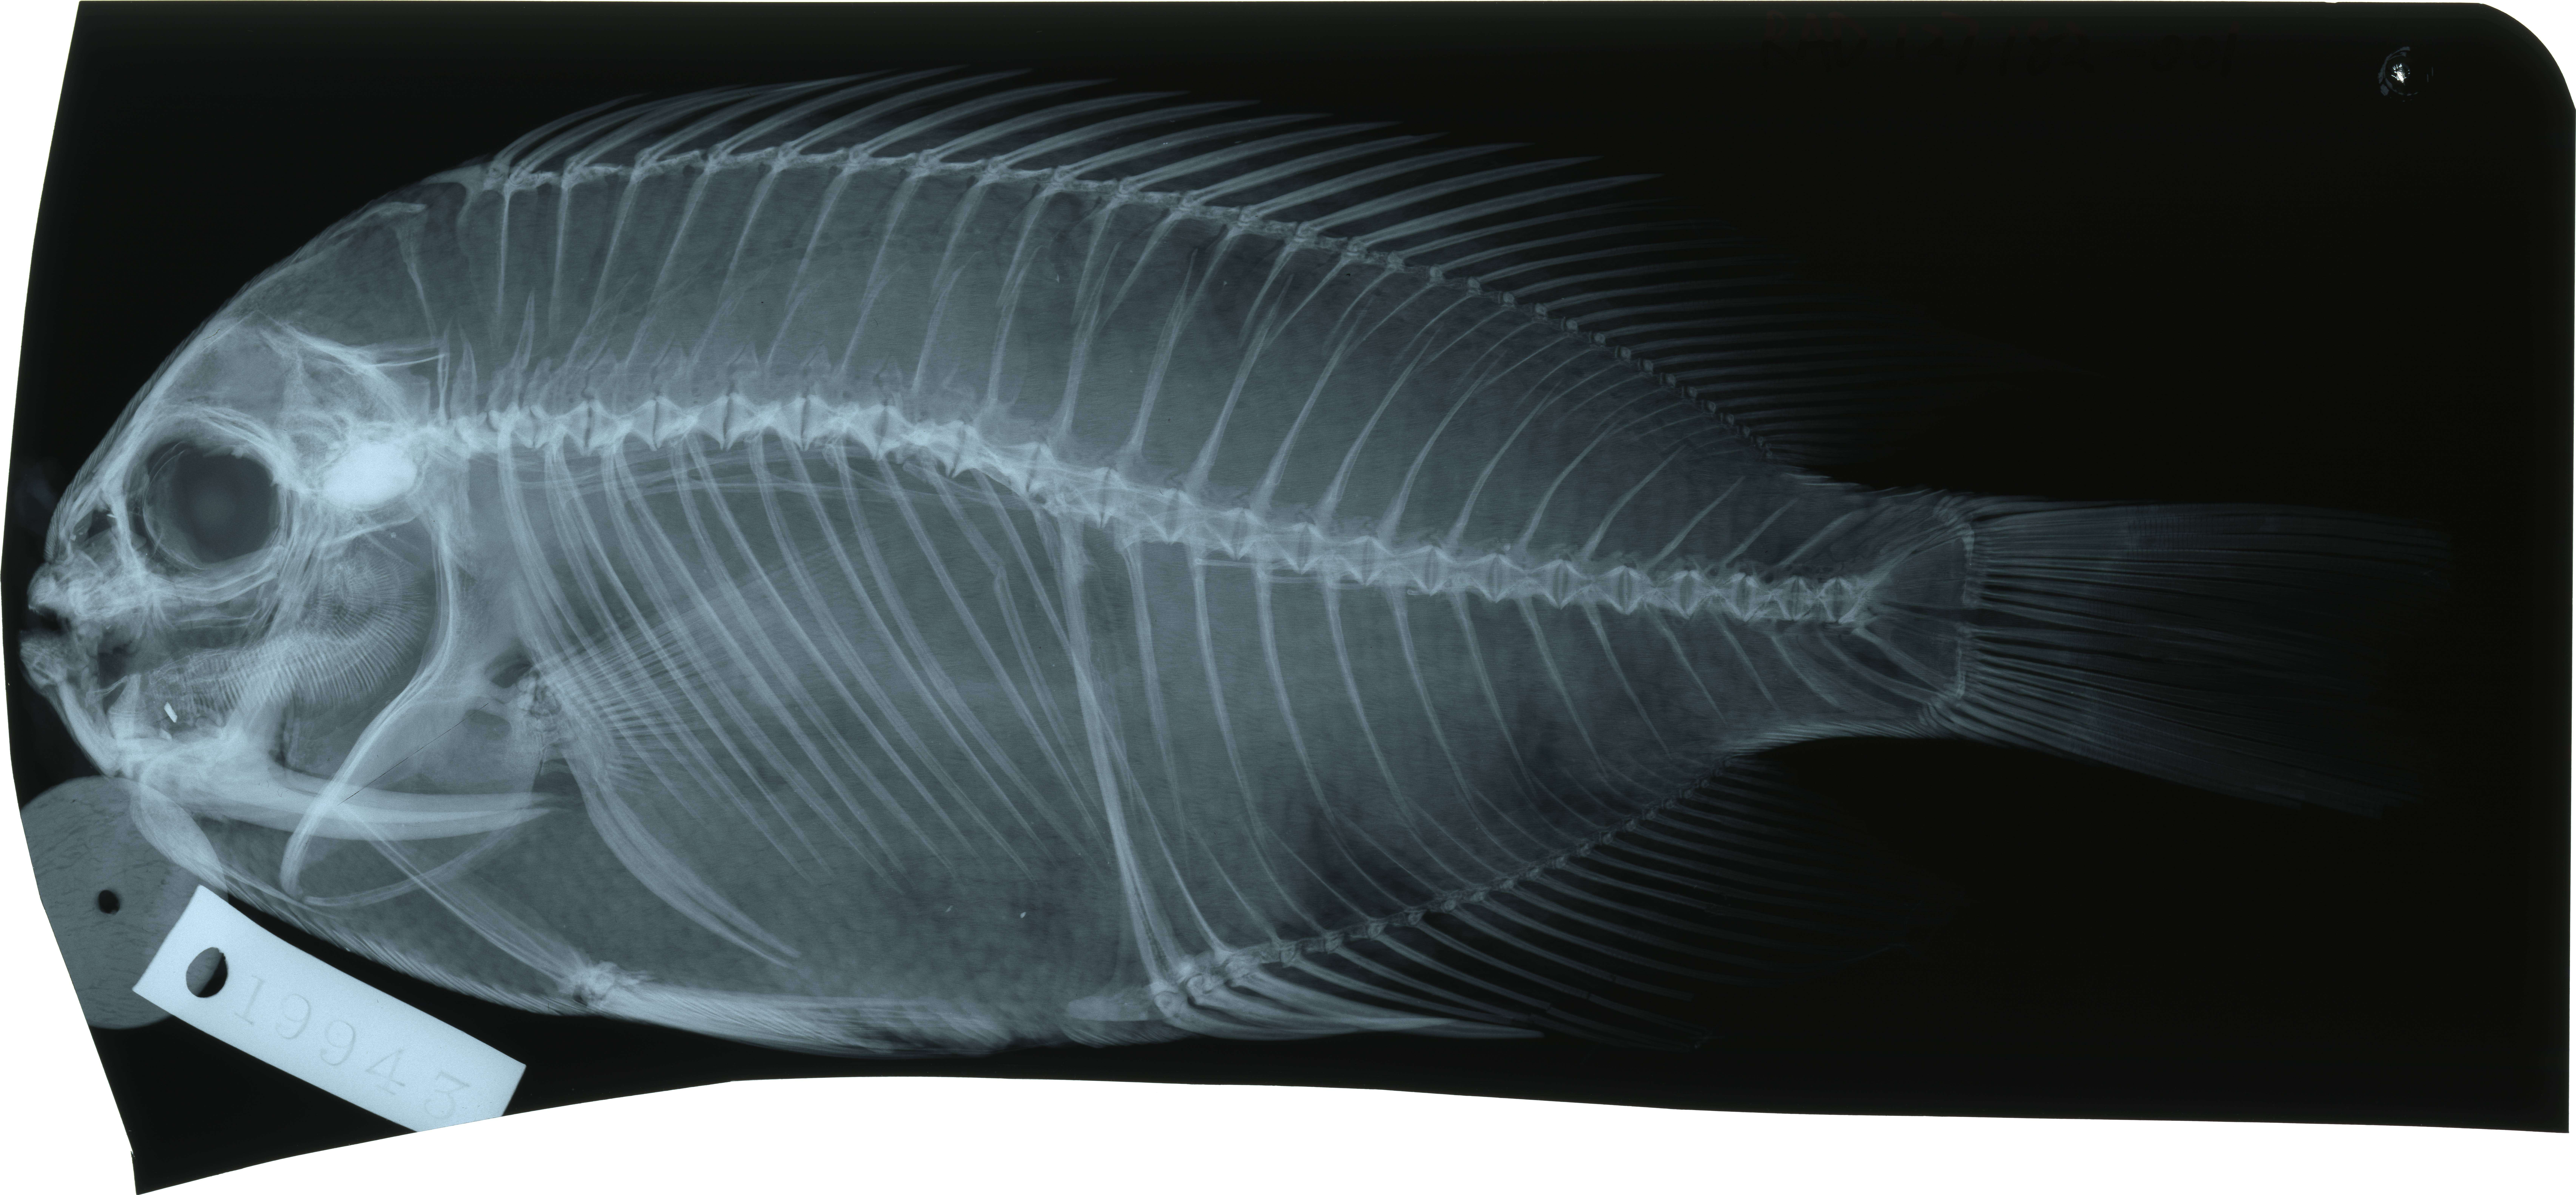 Image of Lyretail Angelfish